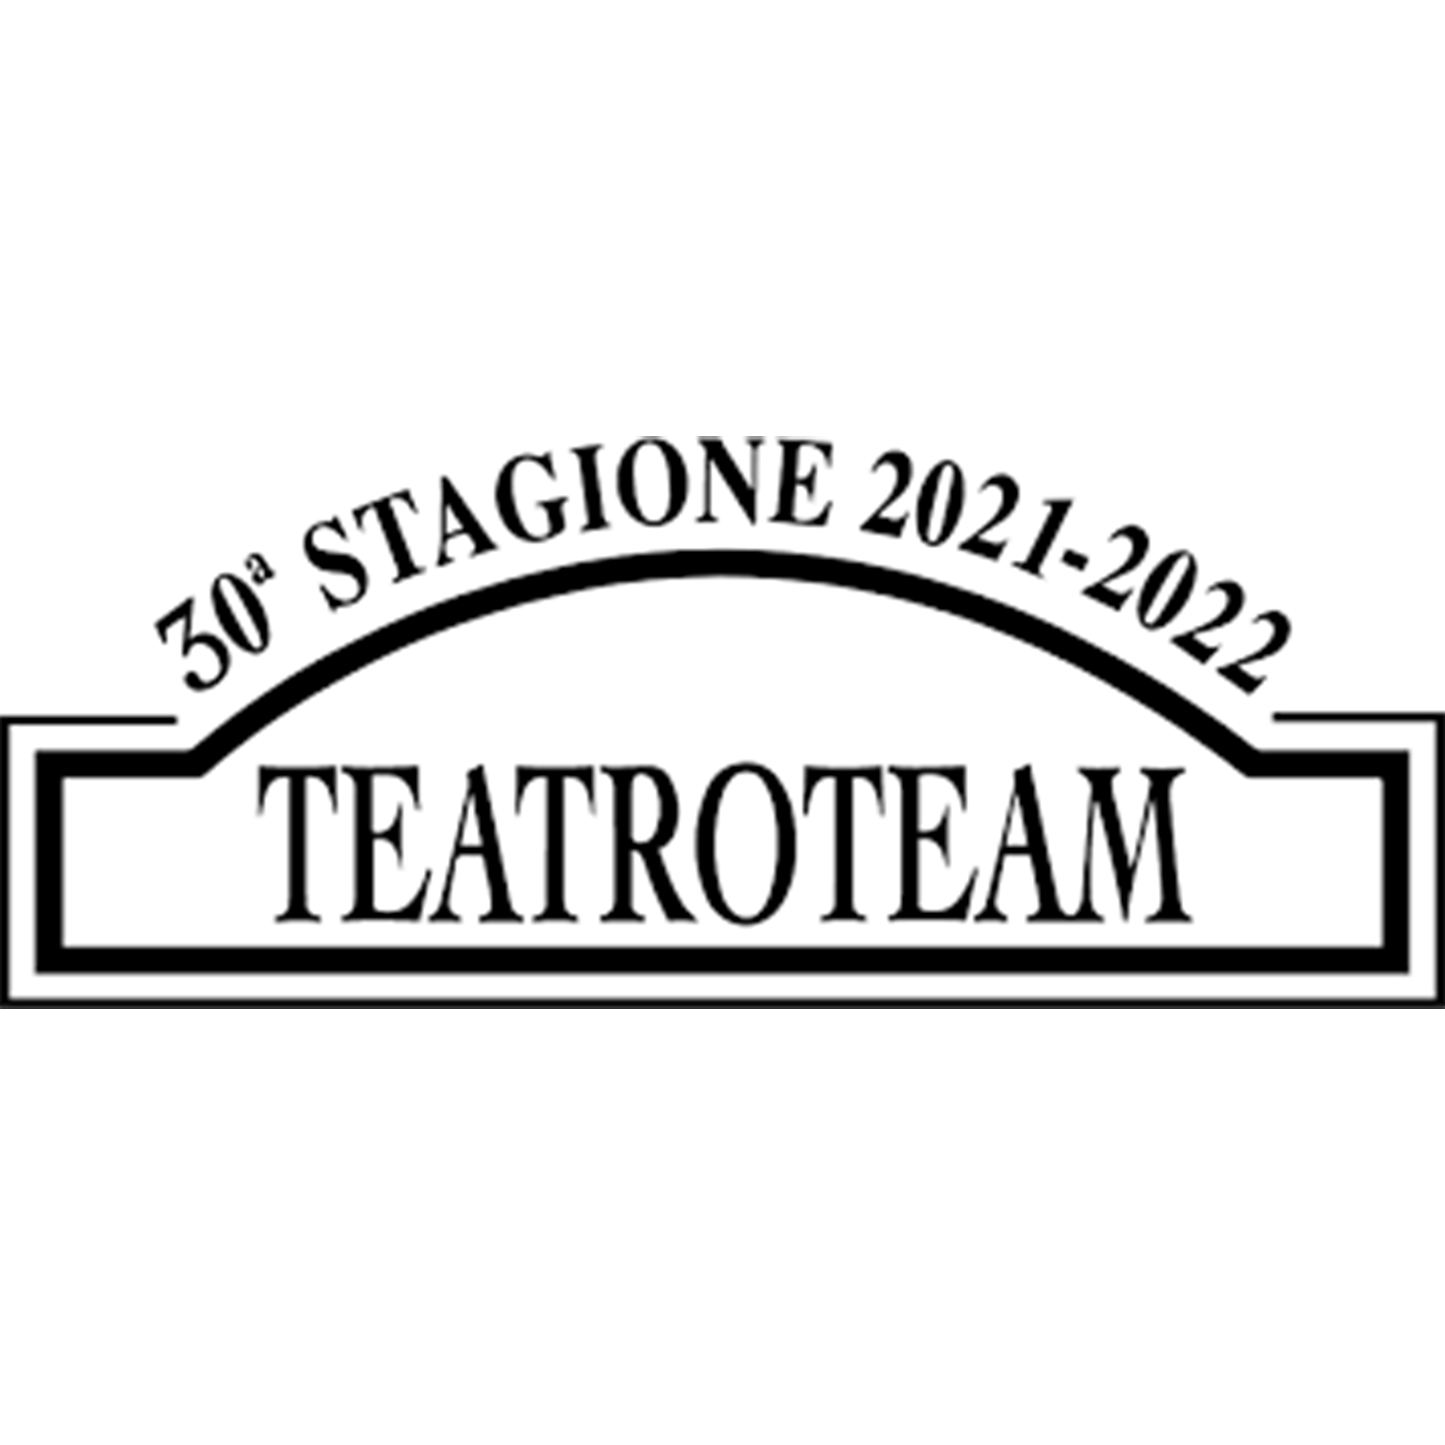 Teatro Team